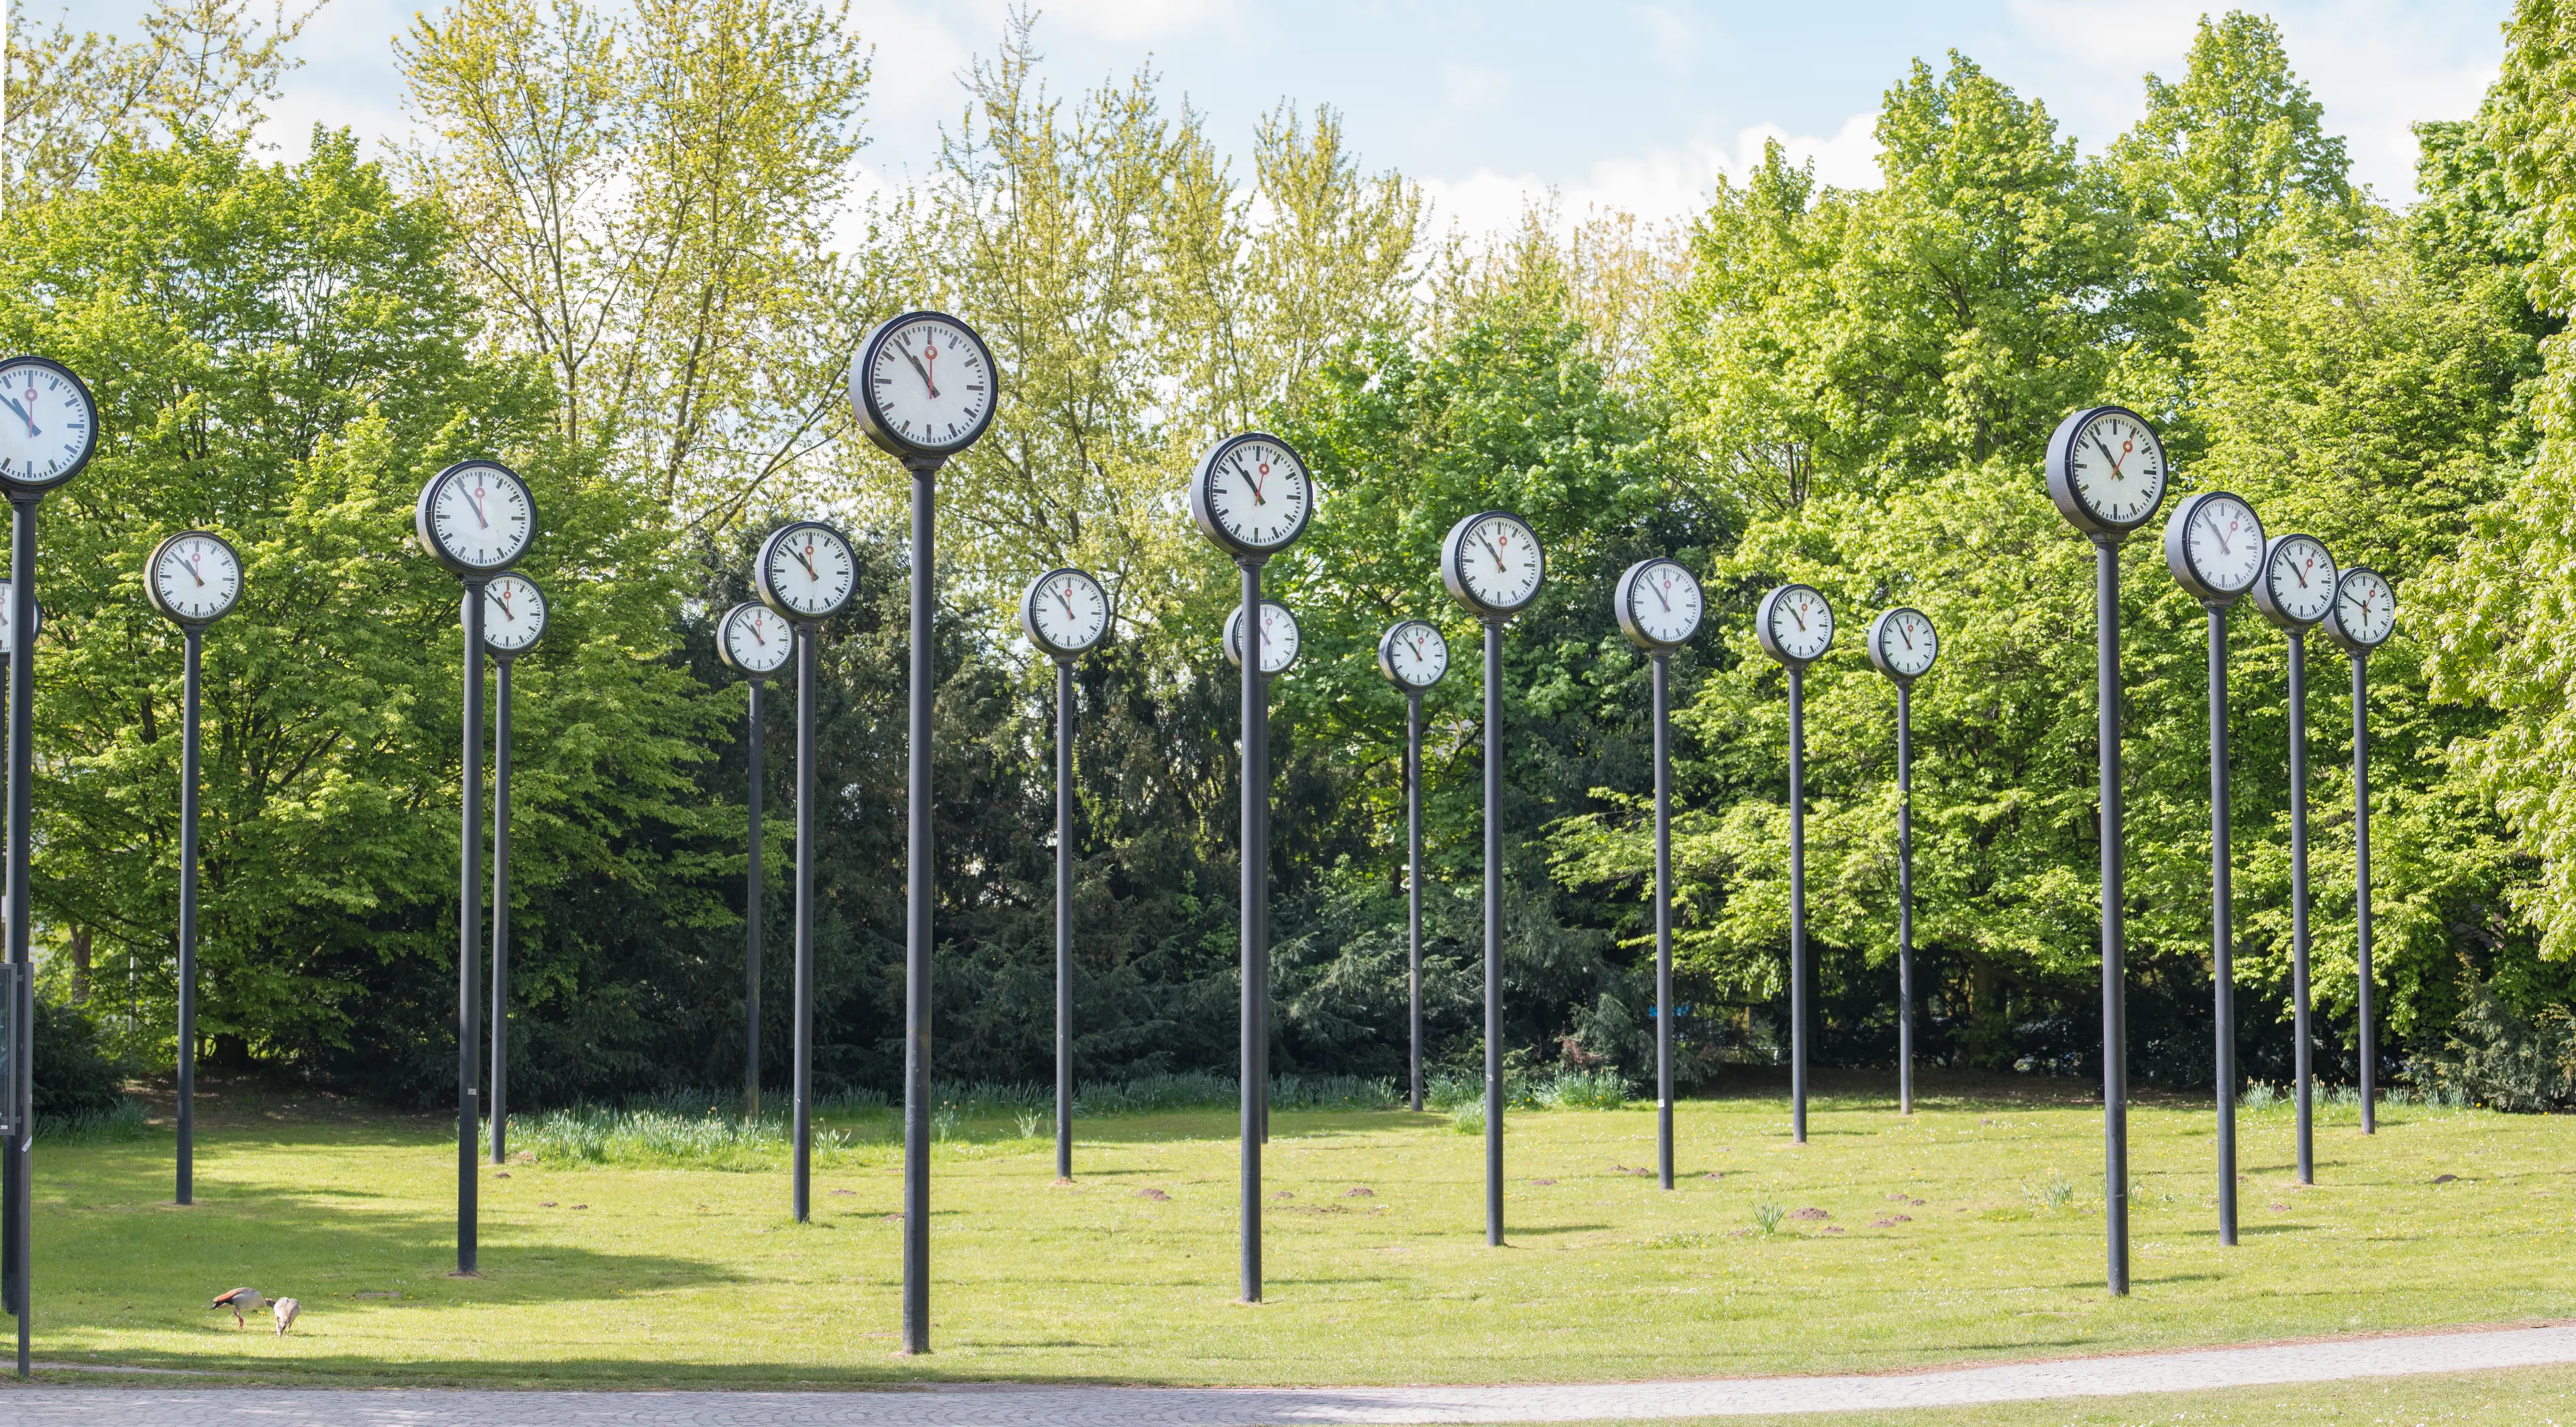 Historical clocks in the Volkspark Südpark